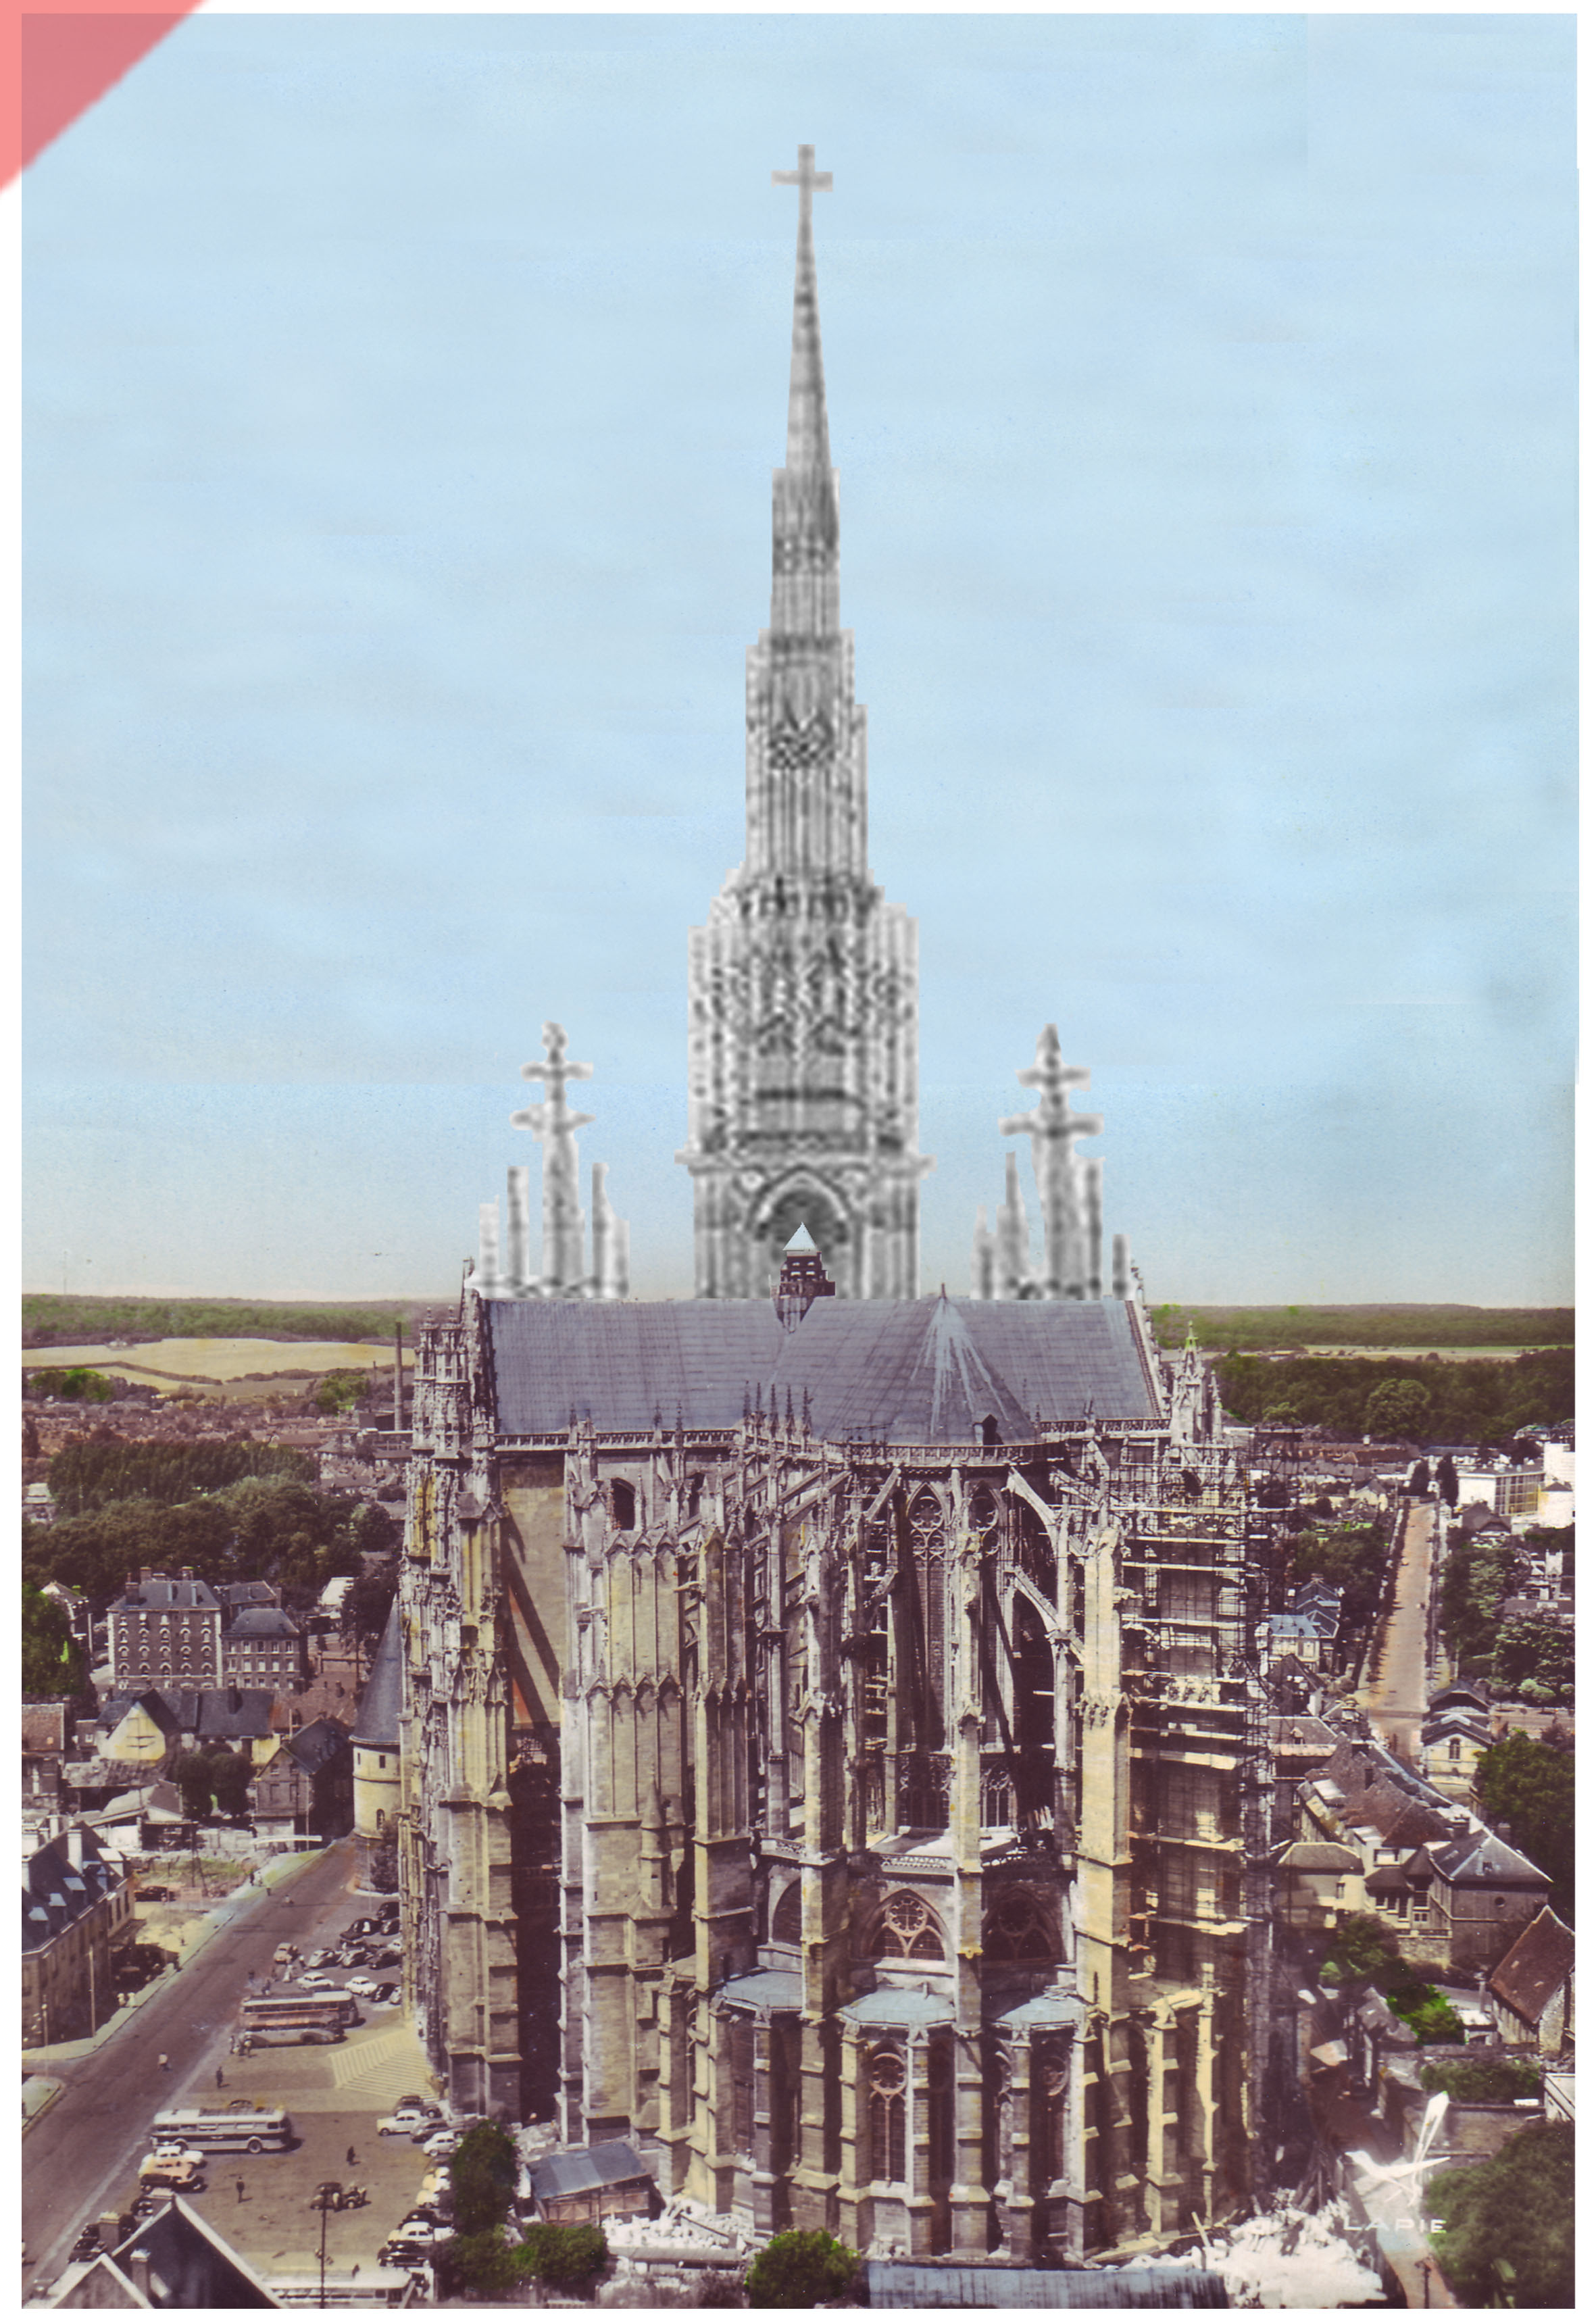 Cathédrale-Beauvais-vue-aerienne-façade-ouest-façade-prévue-tour-1573-église-planifiée-Cathedrale-Beauvais-aerial-view-east-façade-geplante-façade-tower-1573-planned-church-kathedrale